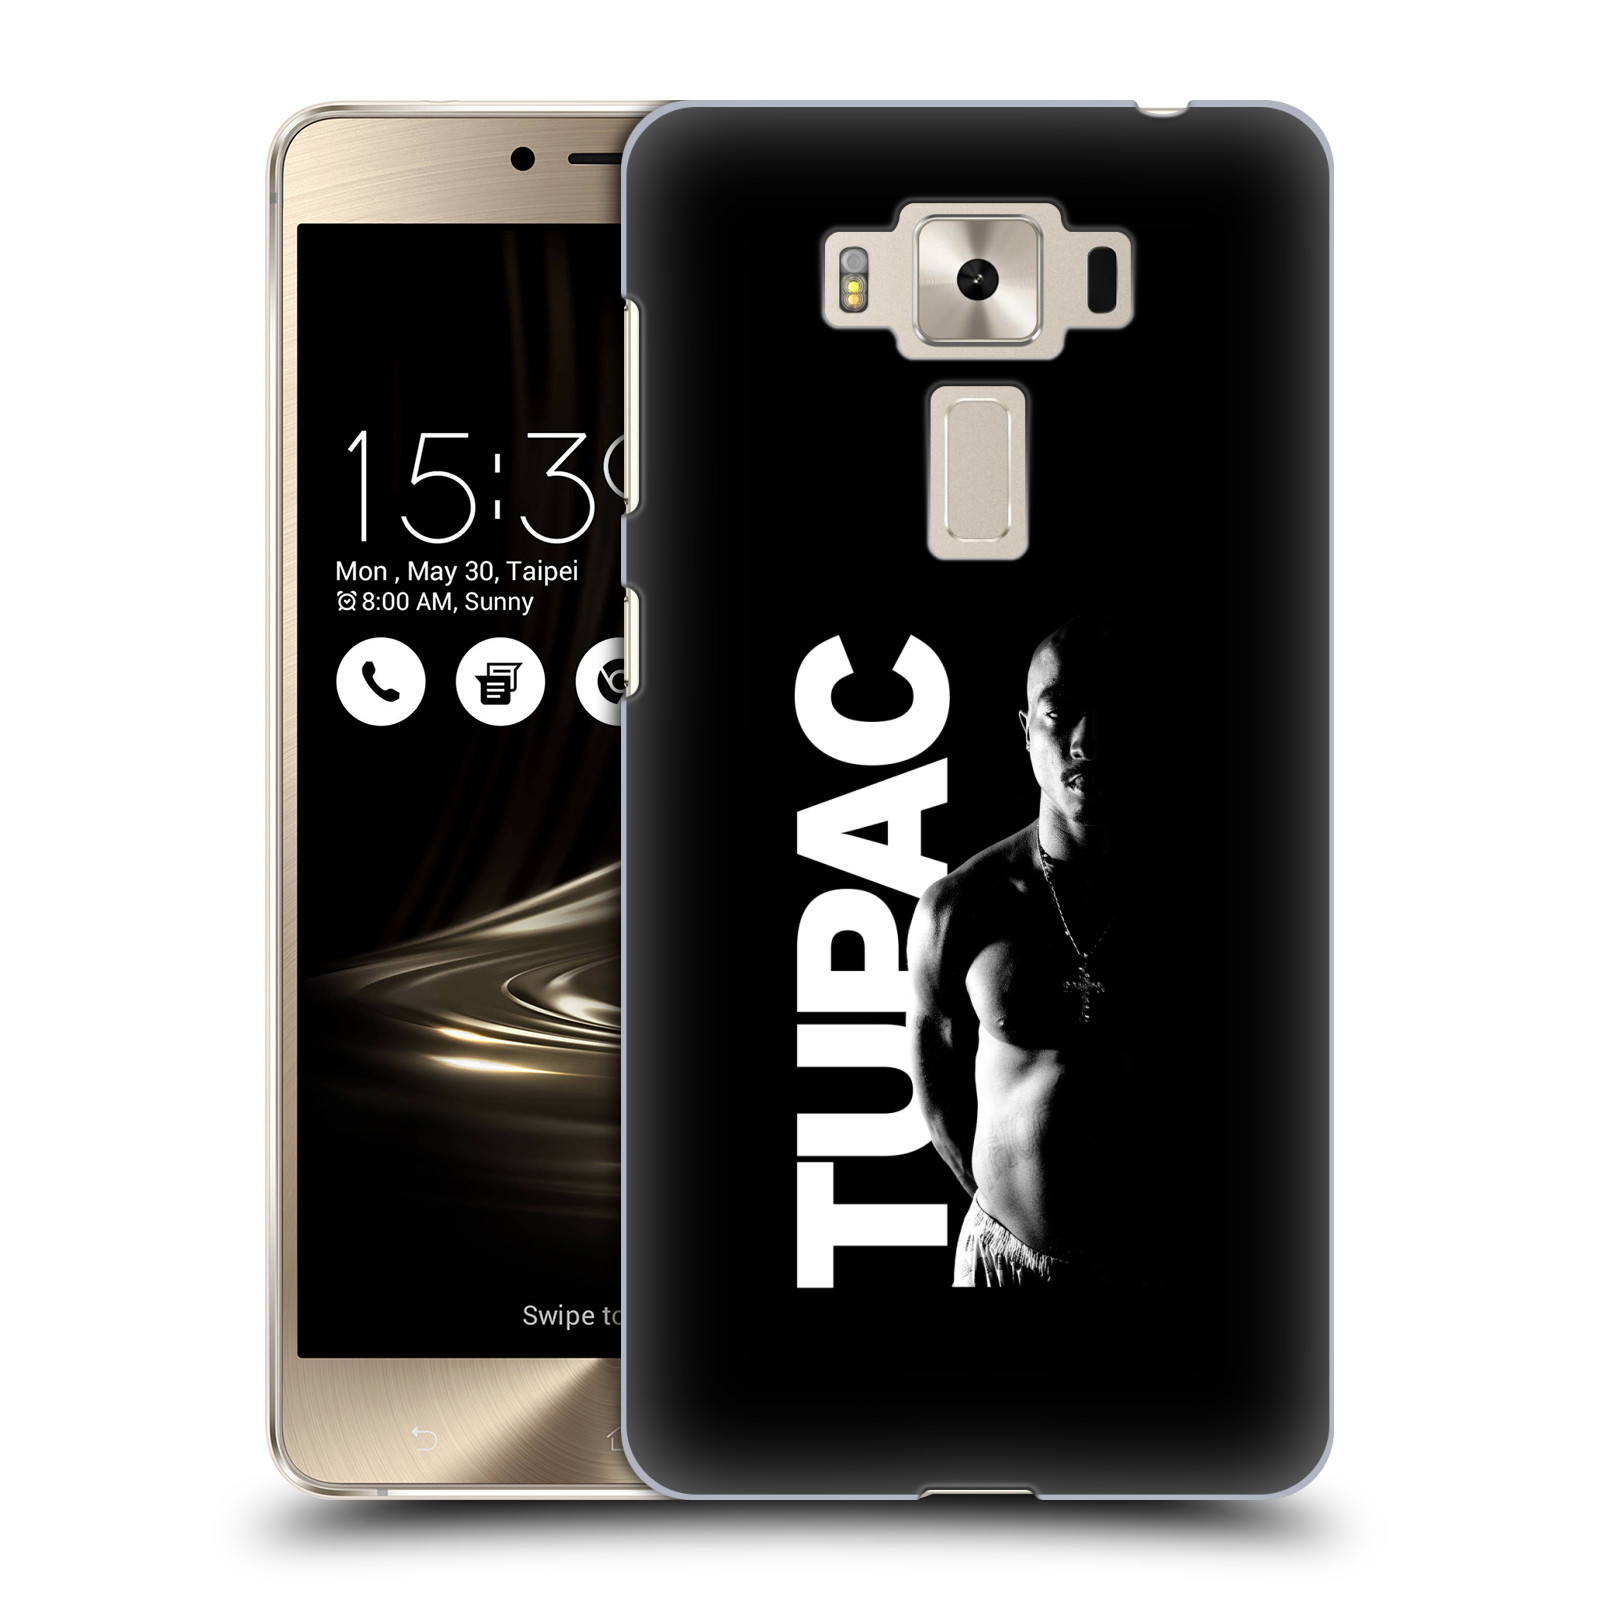 HEAD CASE plastový obal na mobil Asus Zenfone 3 DELUXE ZS550KL Zpěvák rapper Tupac Shakur 2Pac bílý nadpis